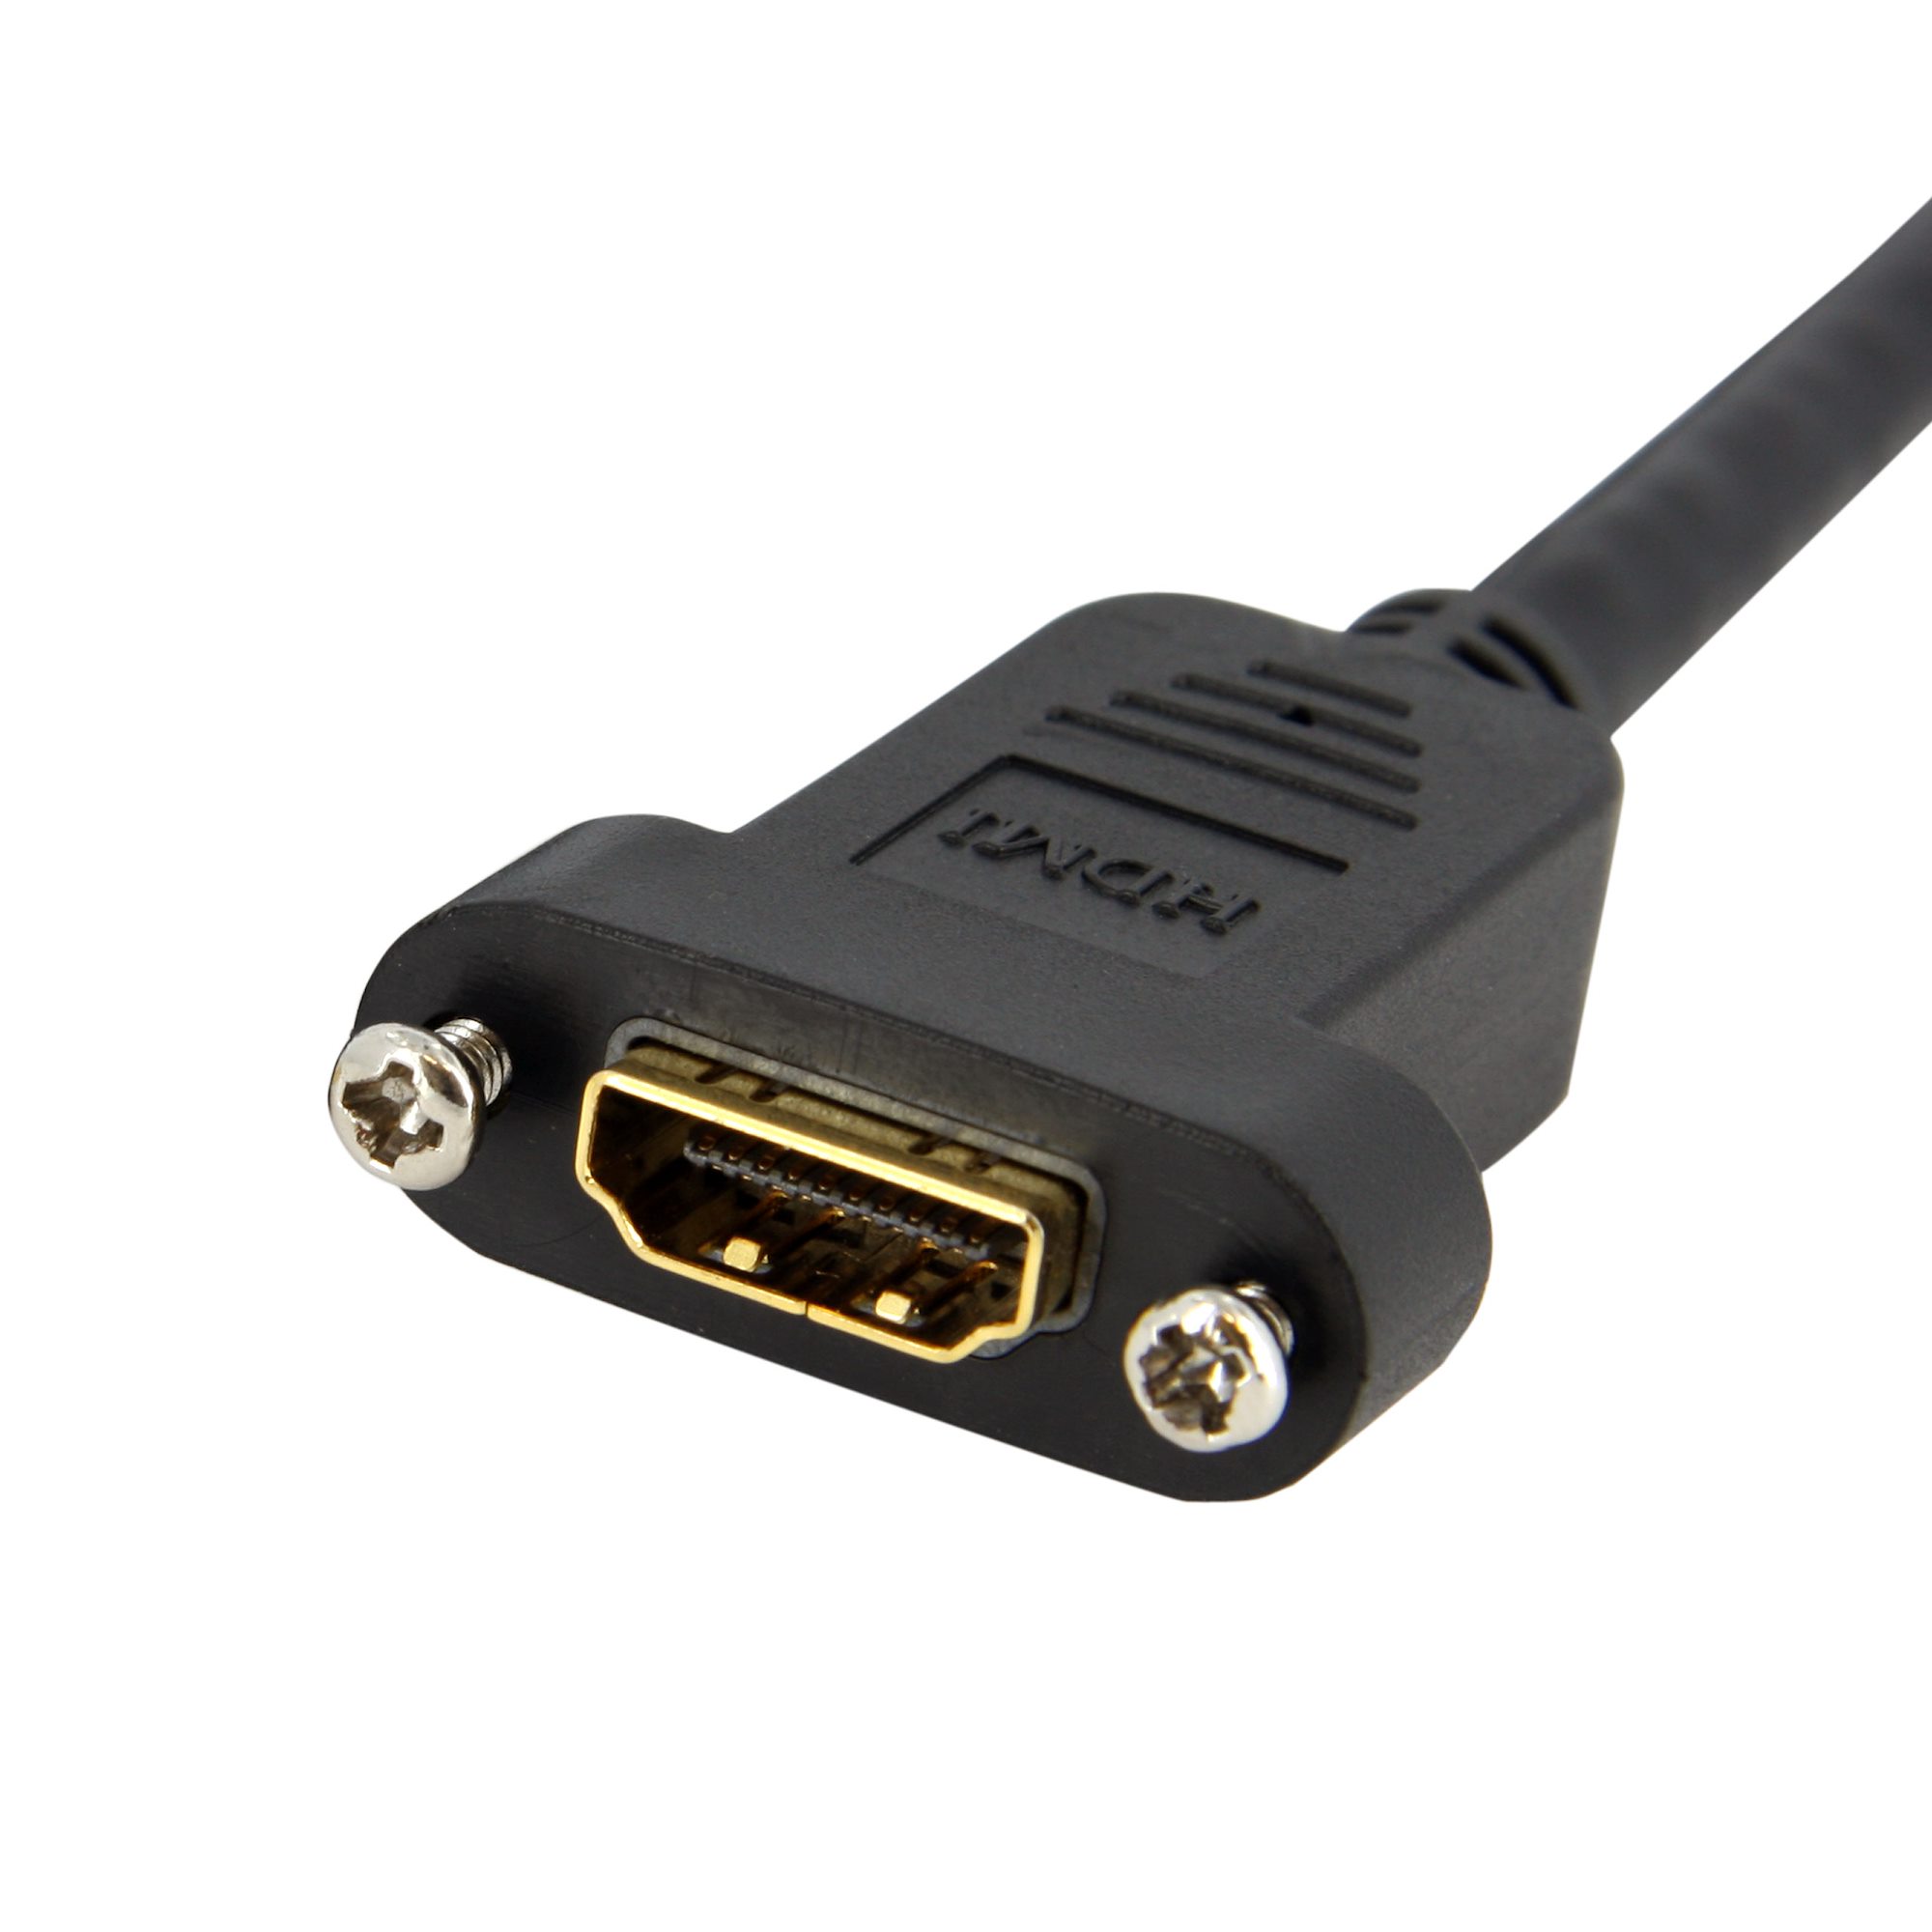 Startech : CABLE ADAPTATEUR HDMI VERS VGA 91CM - M/M - 1920X1200 / 1080P